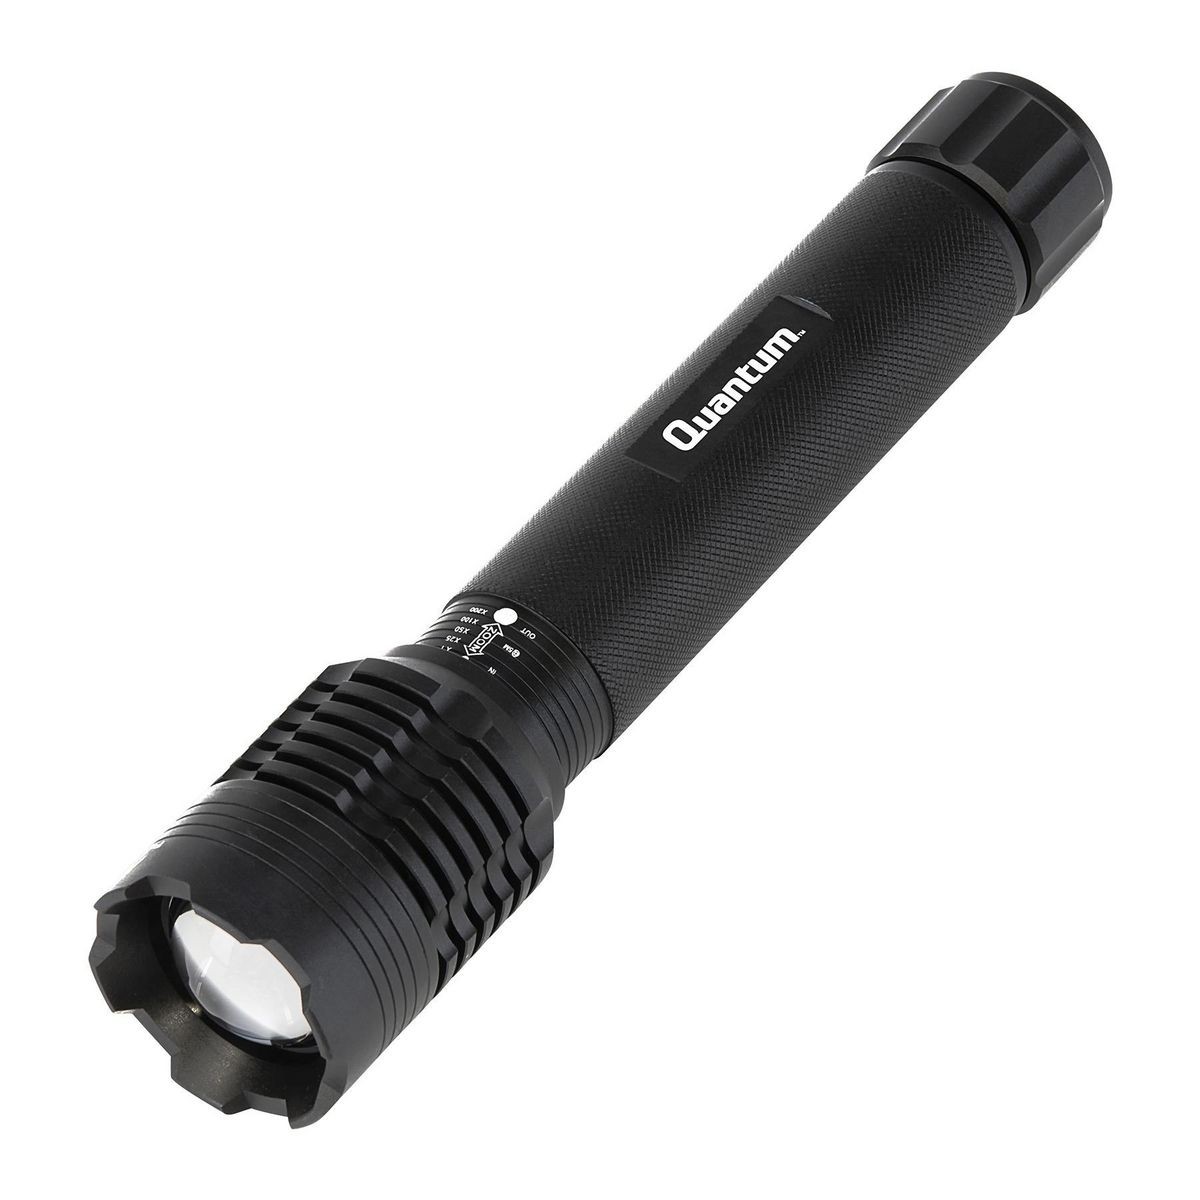 QUANTUM 1500 Lumen LED Flashlight – Item 58220